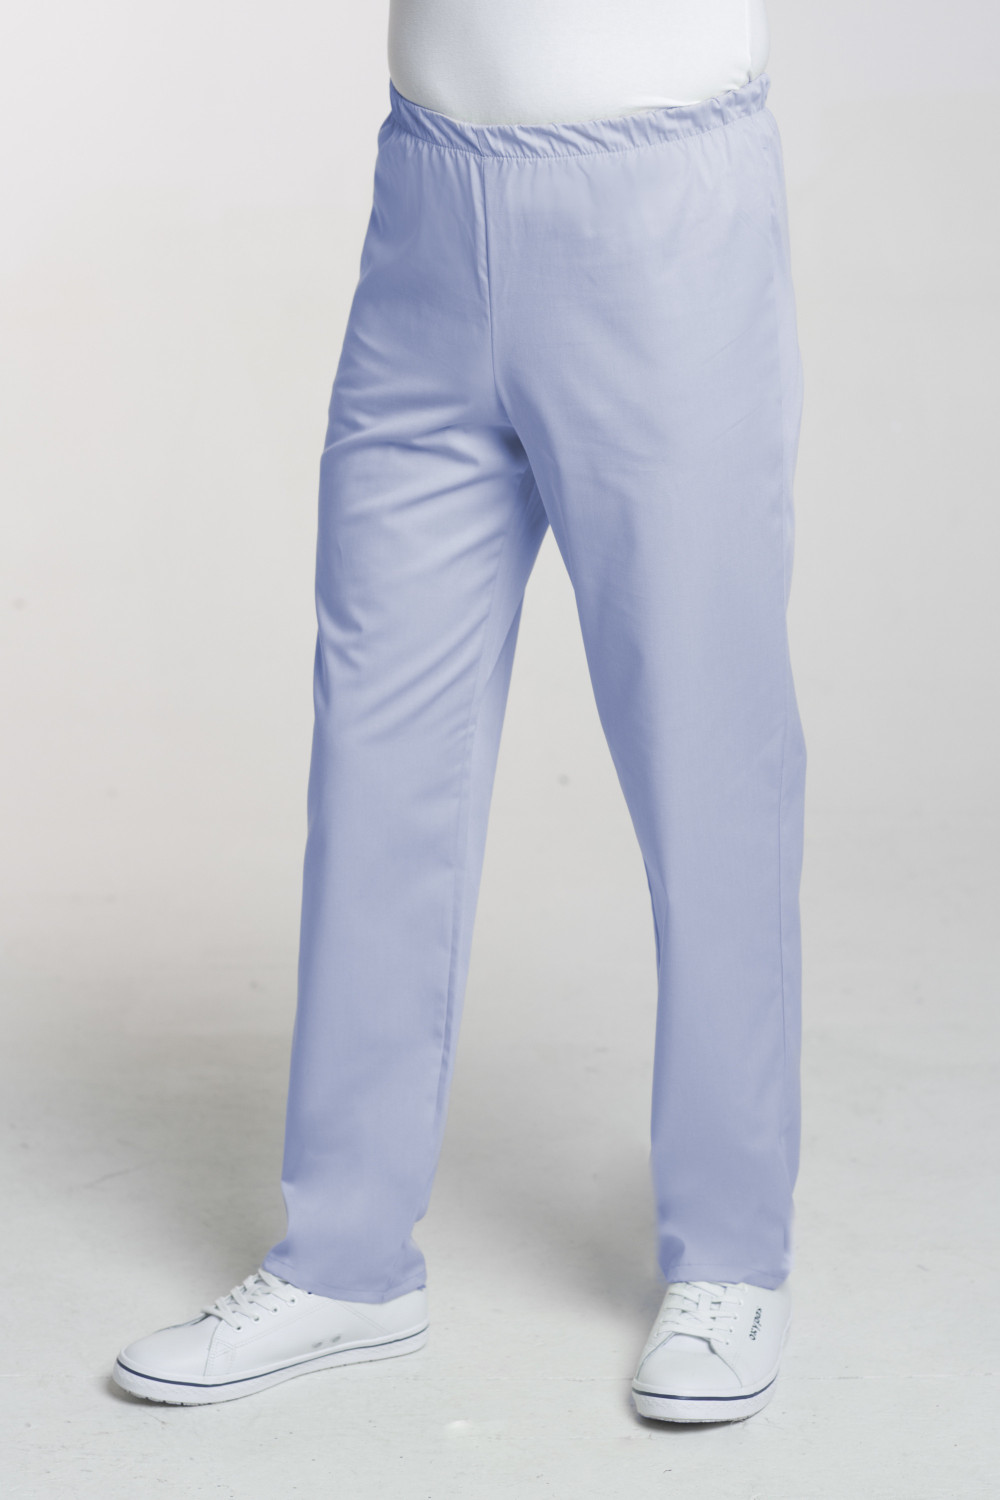 M-075C Spodnie męskie medyczne lekarskie kolor błękit